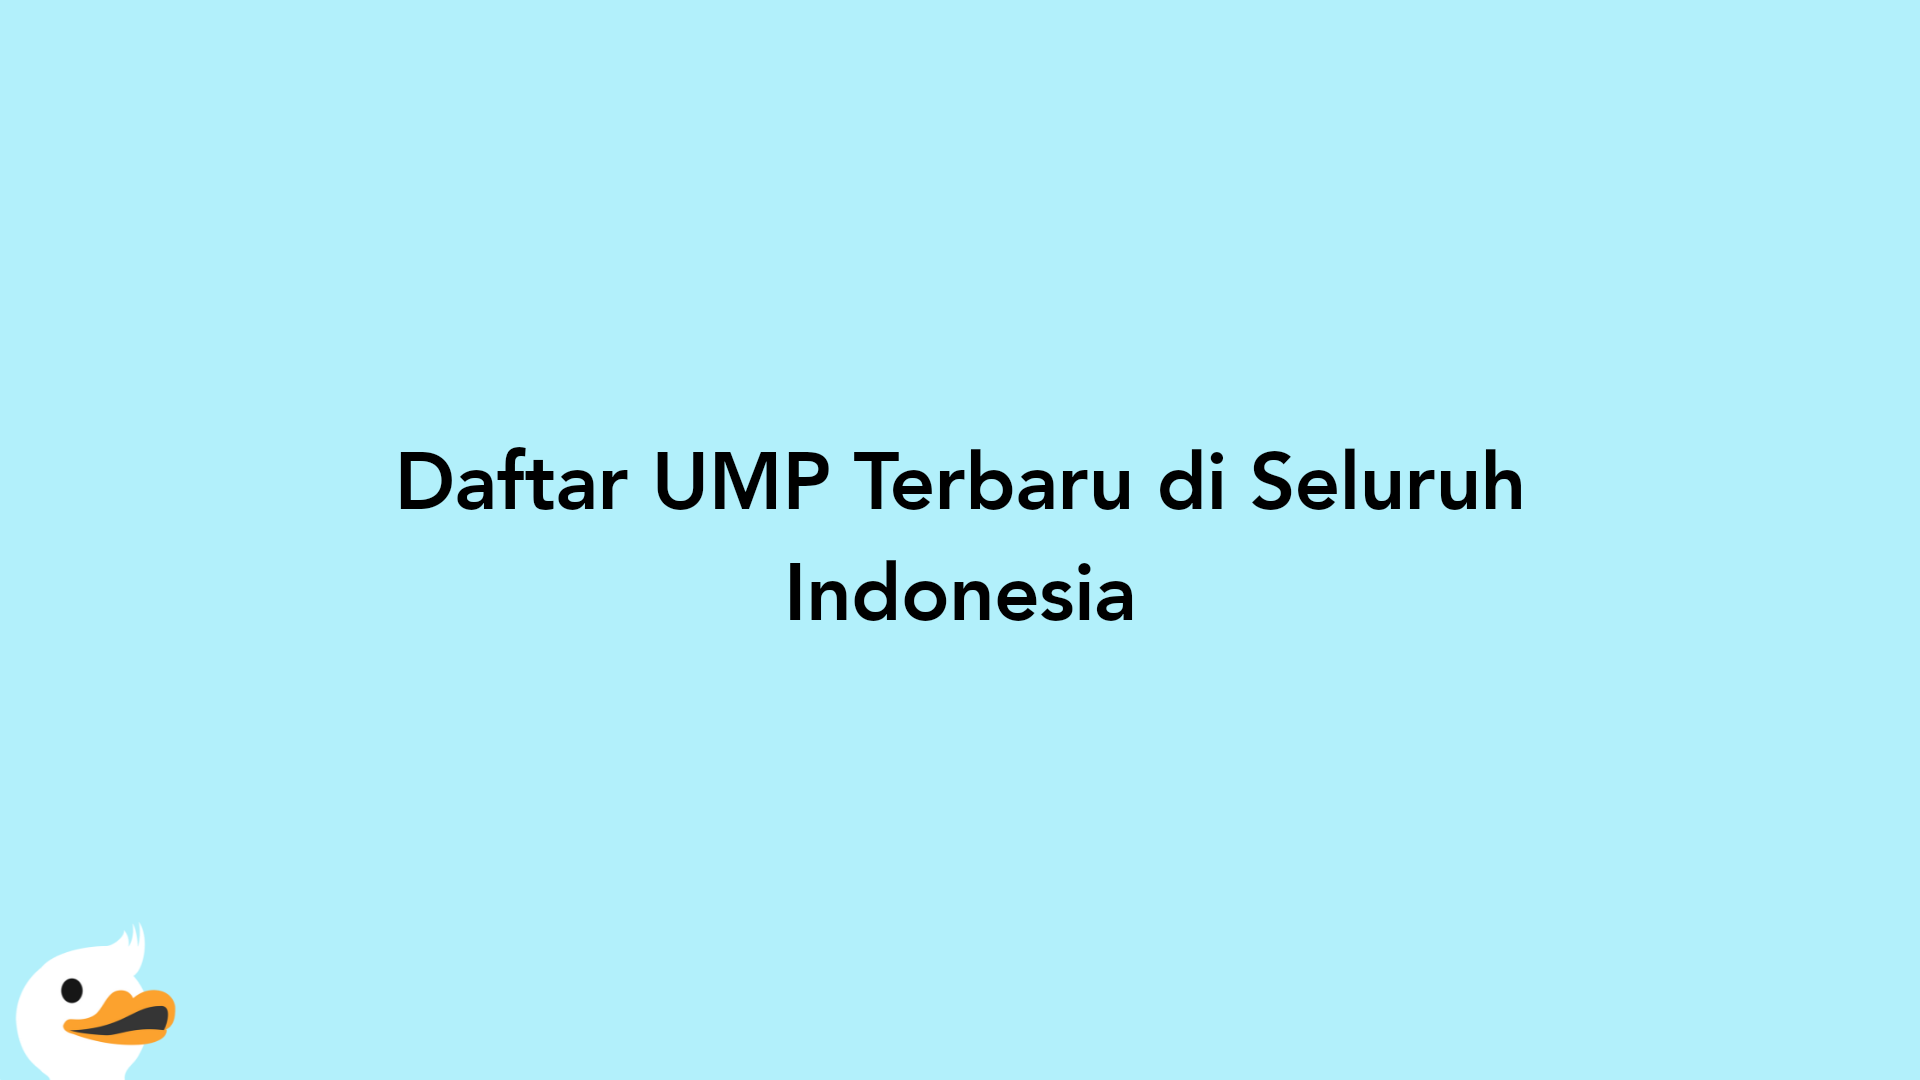 Daftar UMP Terbaru di Seluruh Indonesia